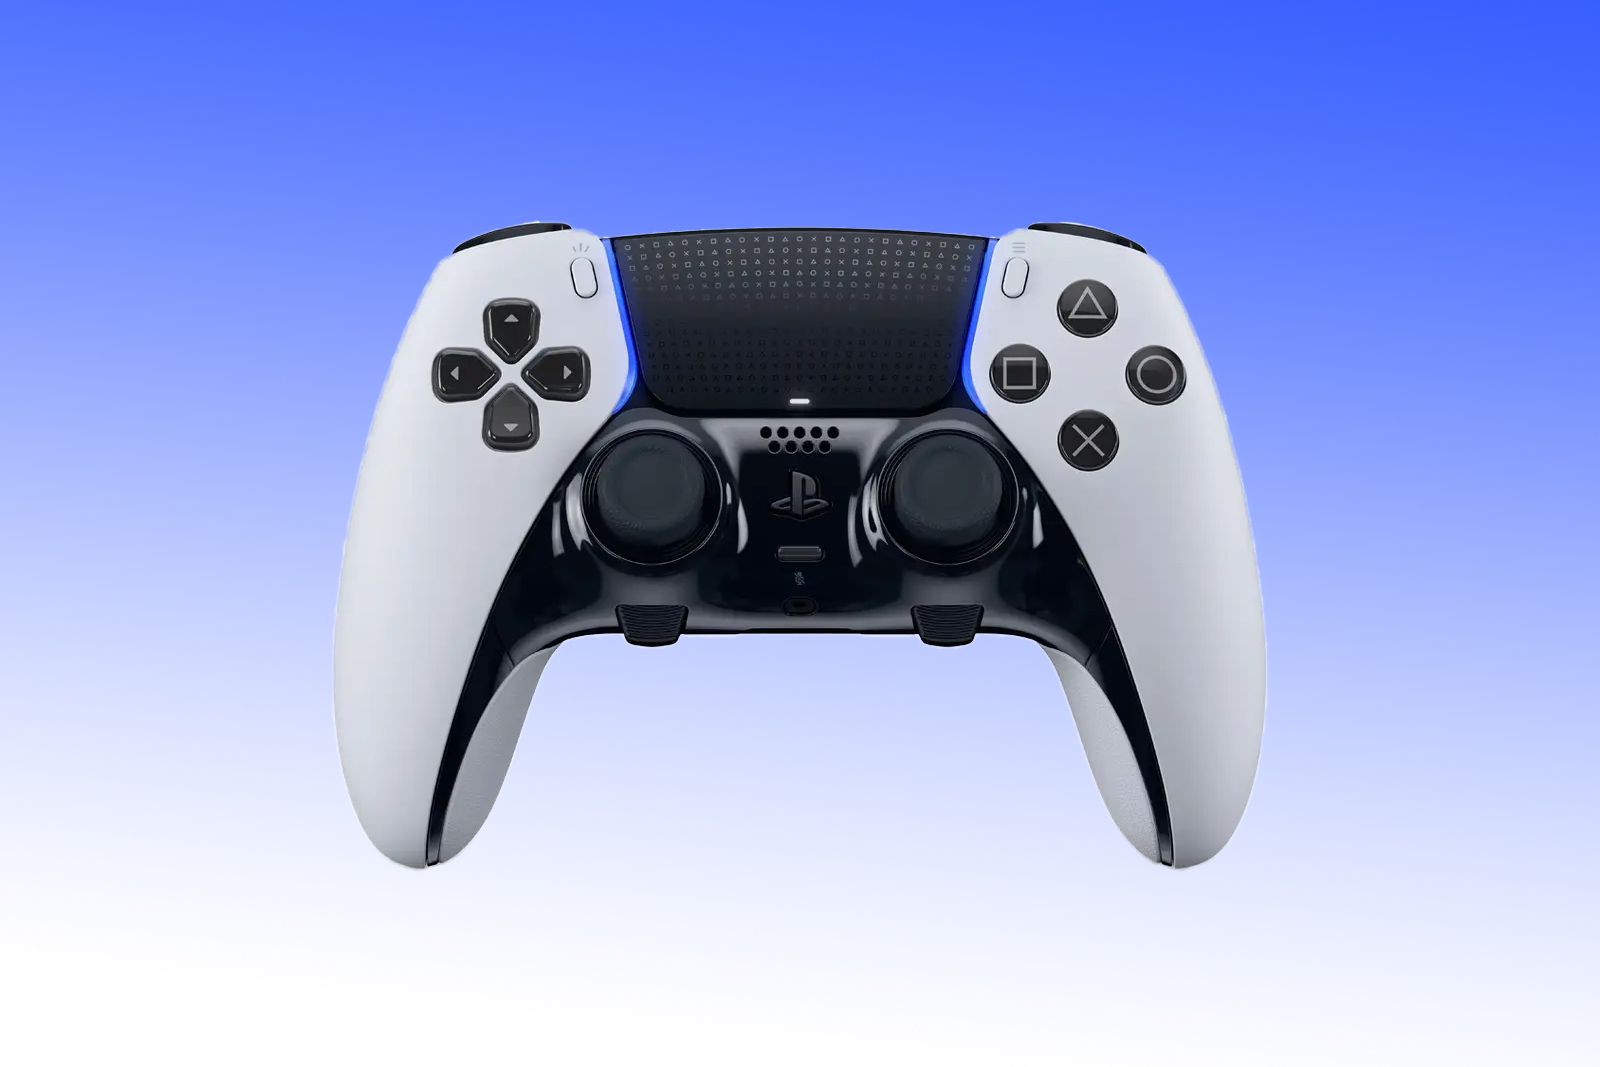 DualSense Edge™ wireless controller, Pro controller for PS5